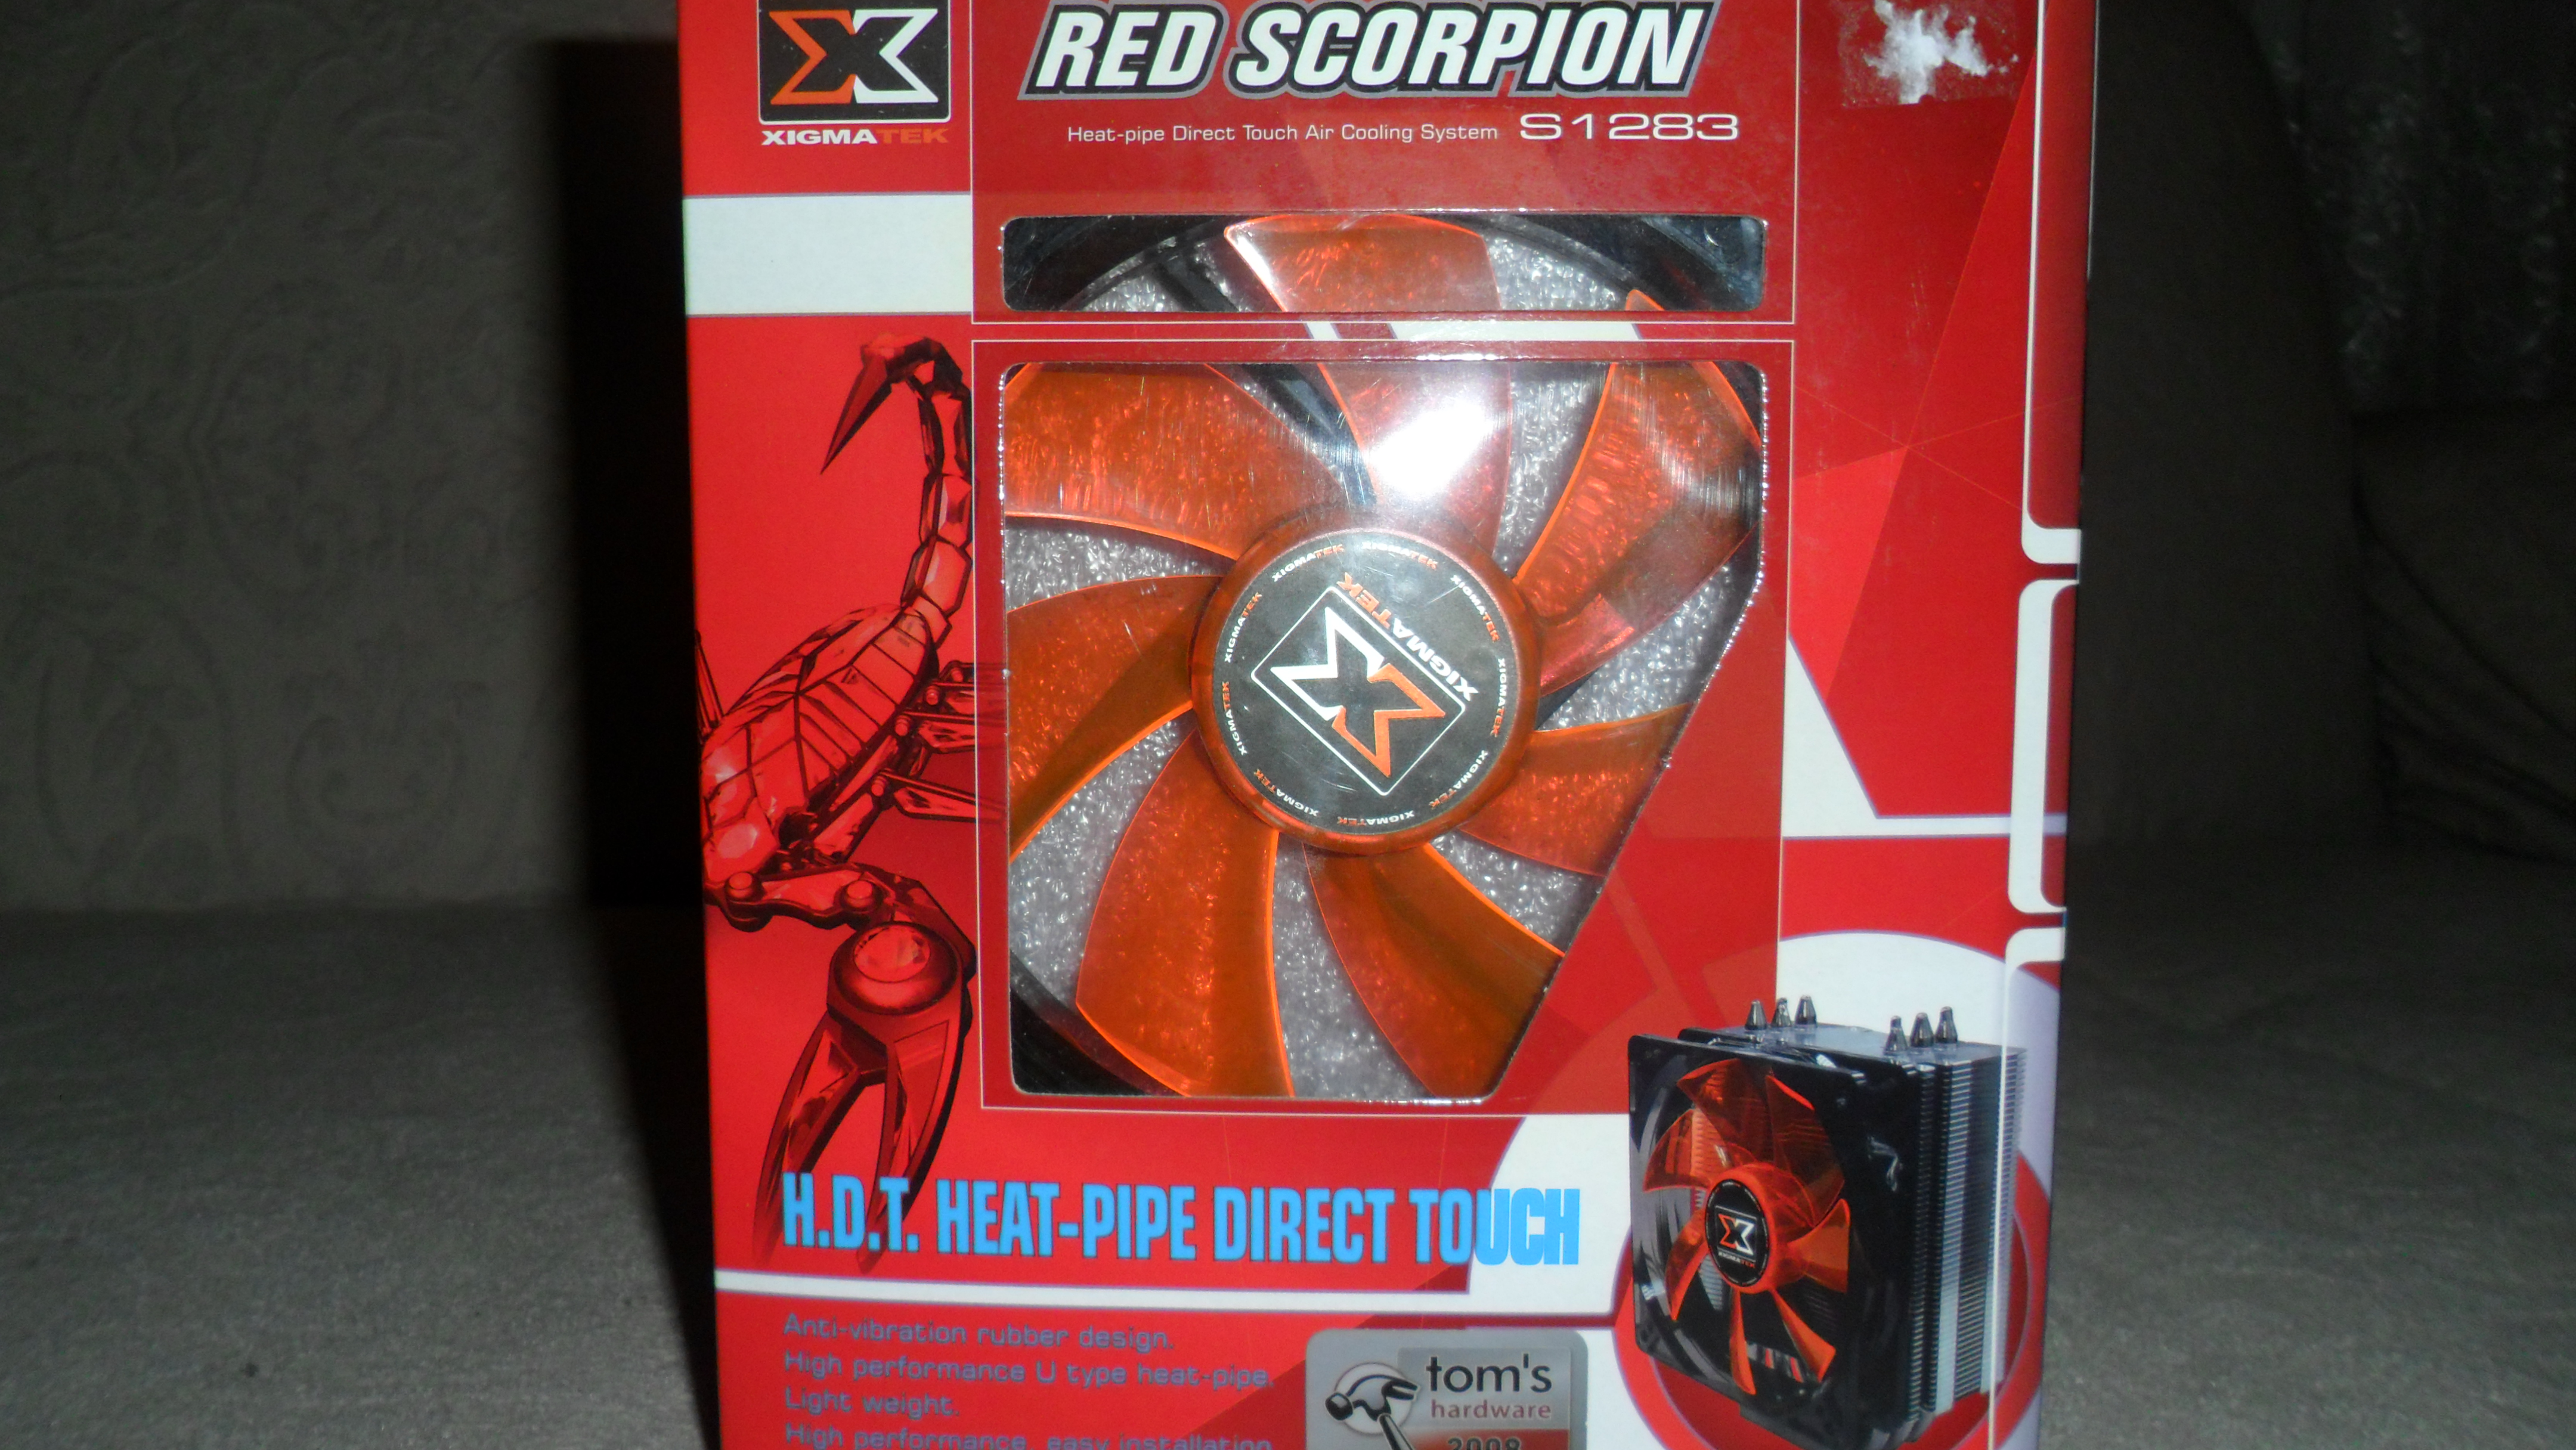  Satılık Xigmatek Red Scorpion yada Alınık 1155 Pin aparatı